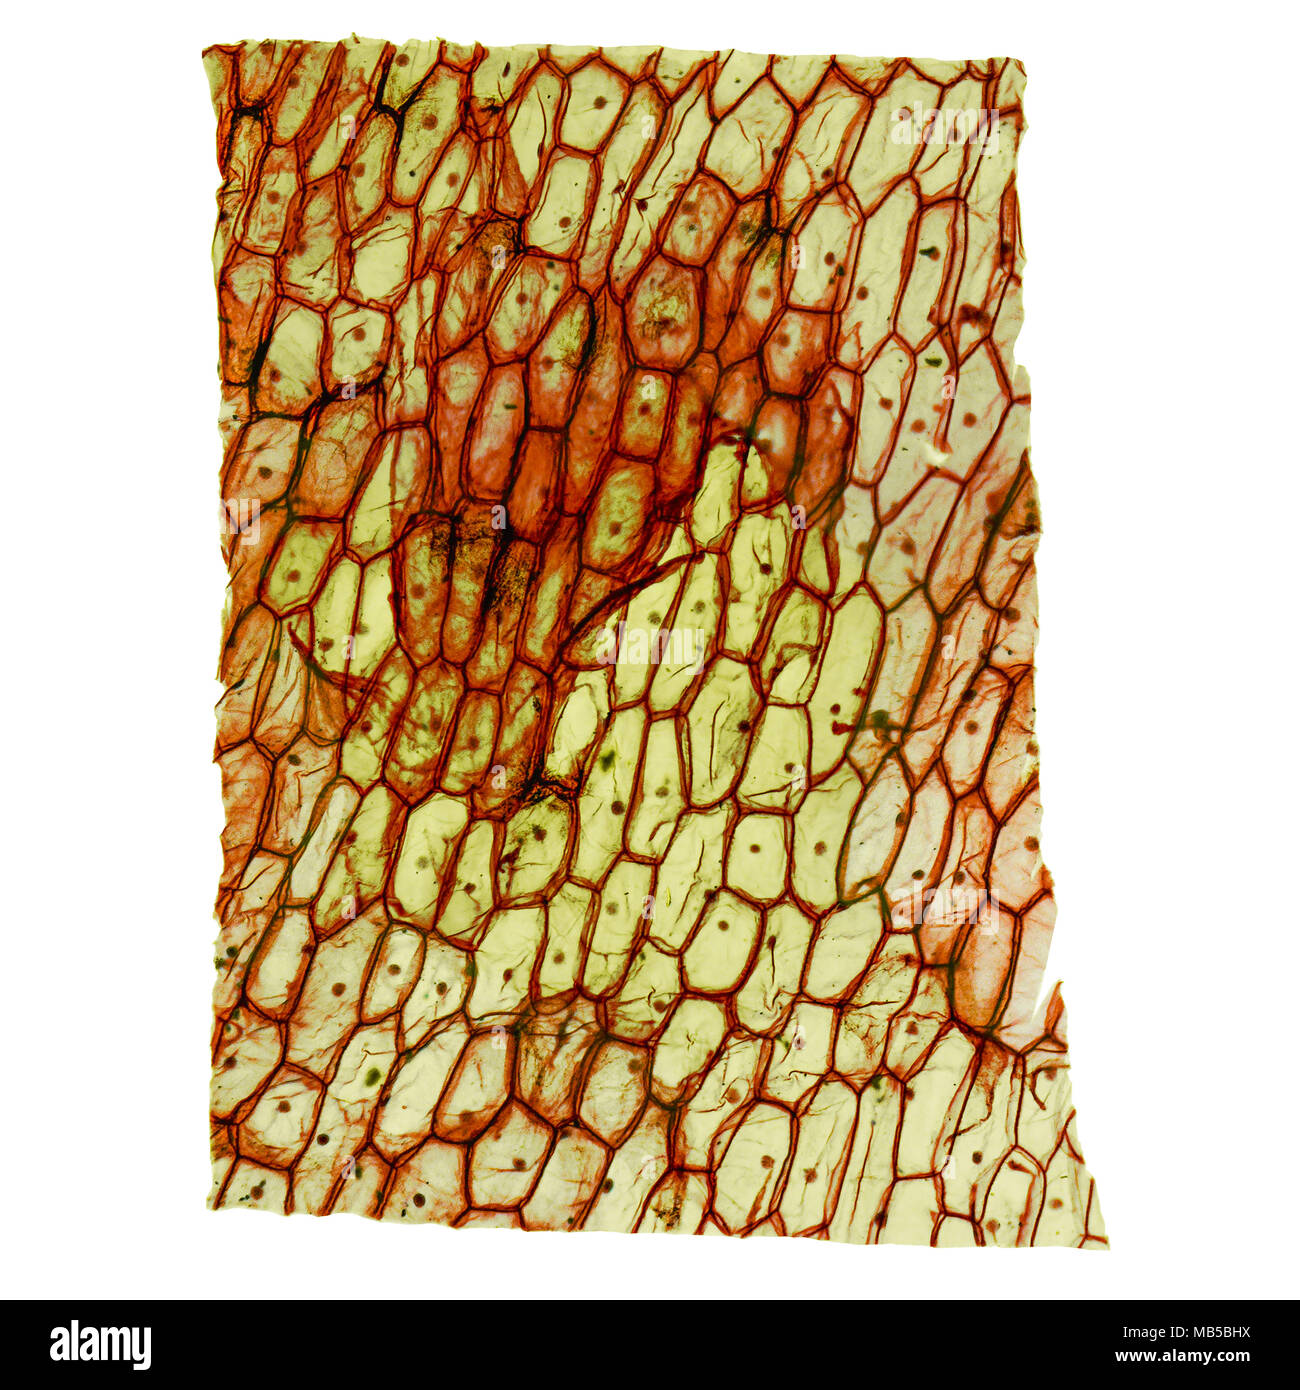 Alta risoluzione microfotografia ottica di cipolla cellule epidermus visto attraverso un microscopio Foto Stock